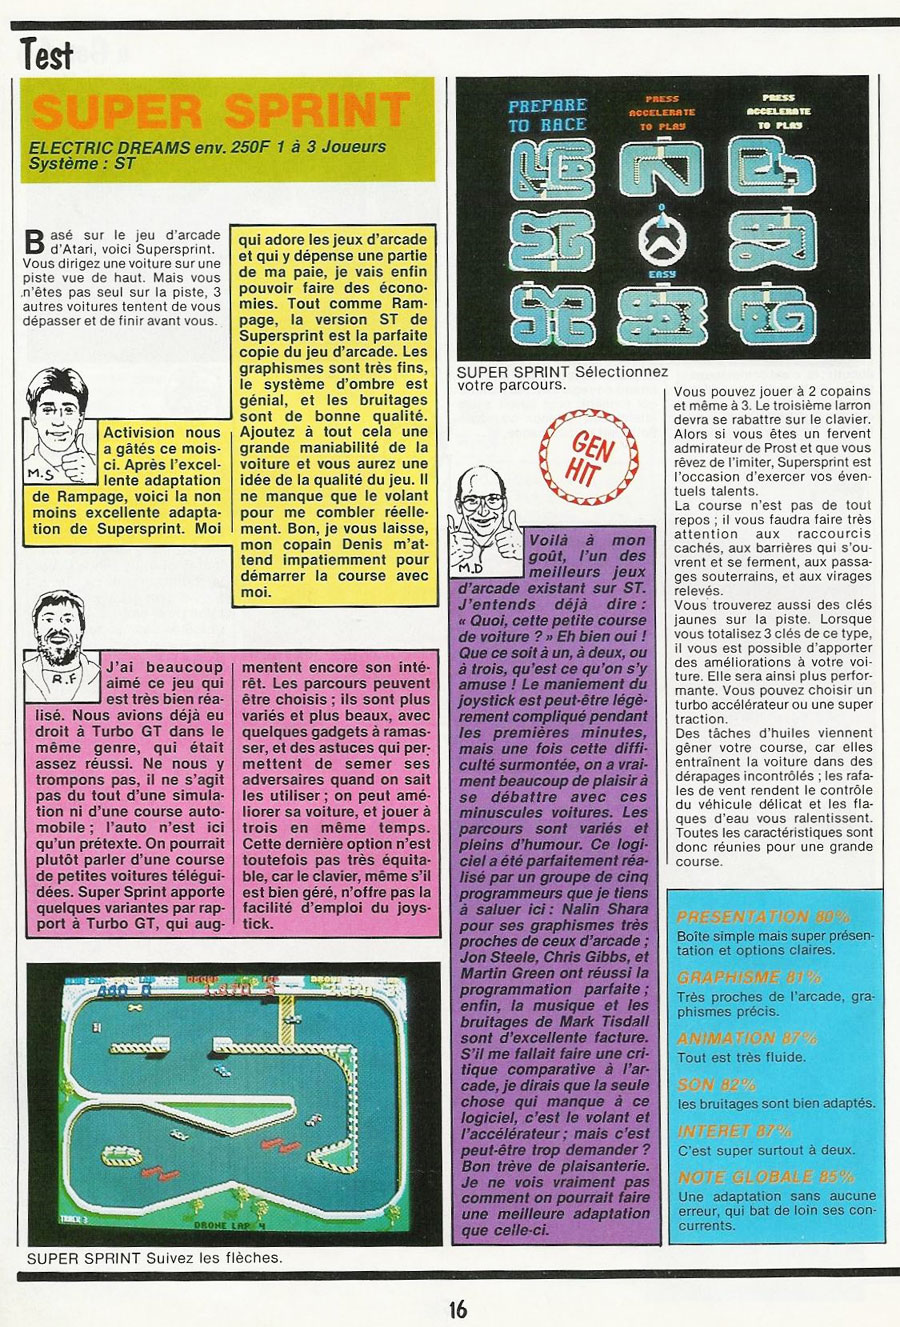 LES PREMIERS JEUX ATARI ST (1985-1986) - Page 12 Super_sprint_review_atari_st_generation_4